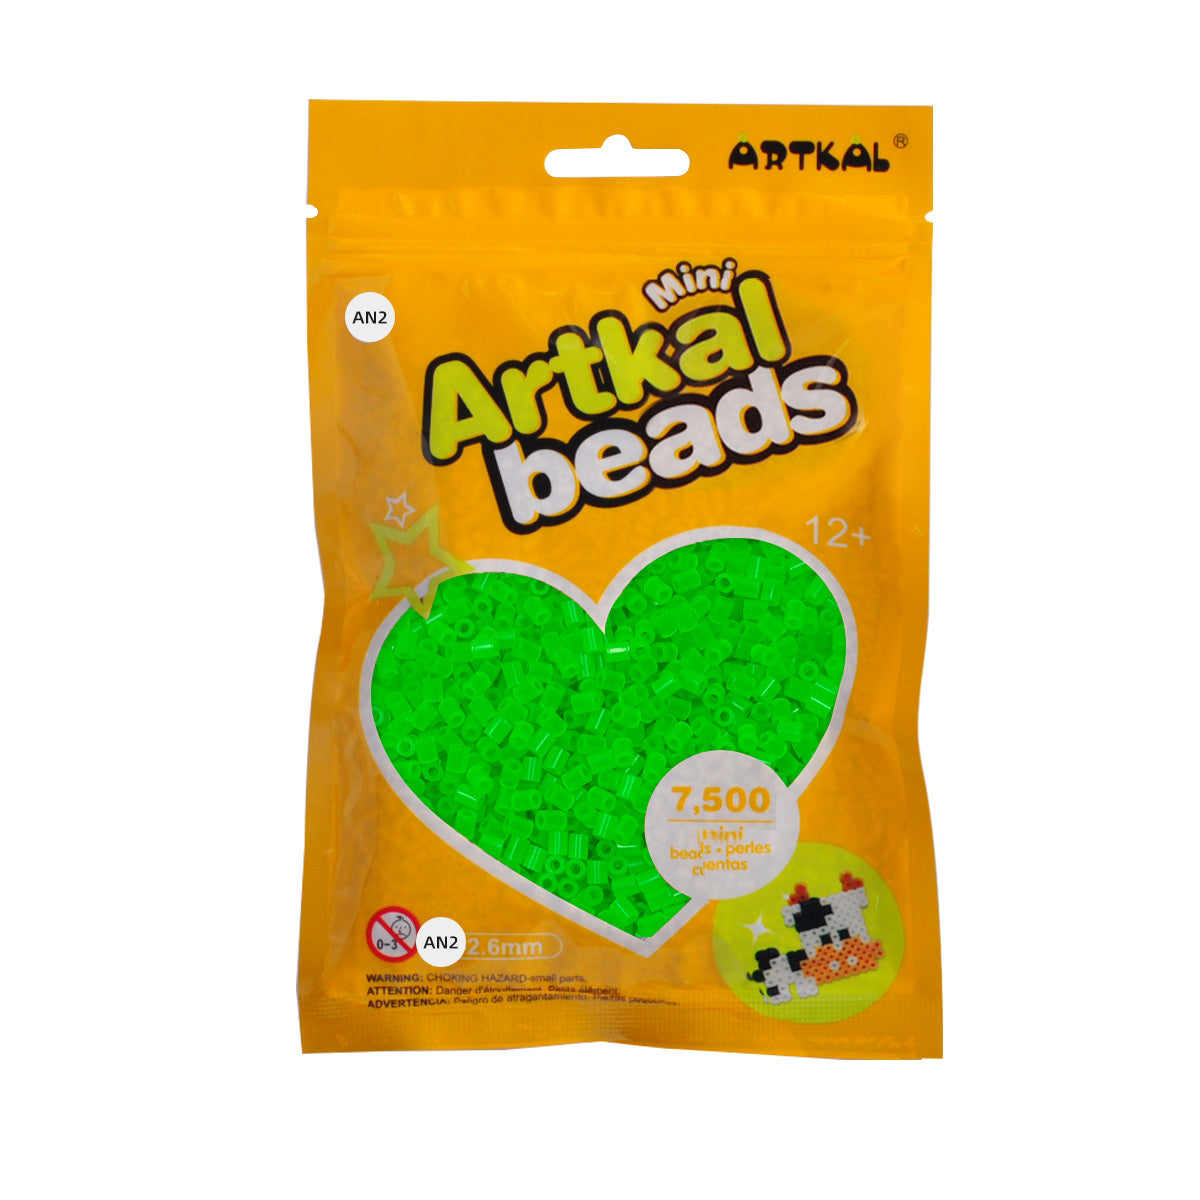 (AN1-AN4) A-2.6mm 7500P single pack mini artkal beads